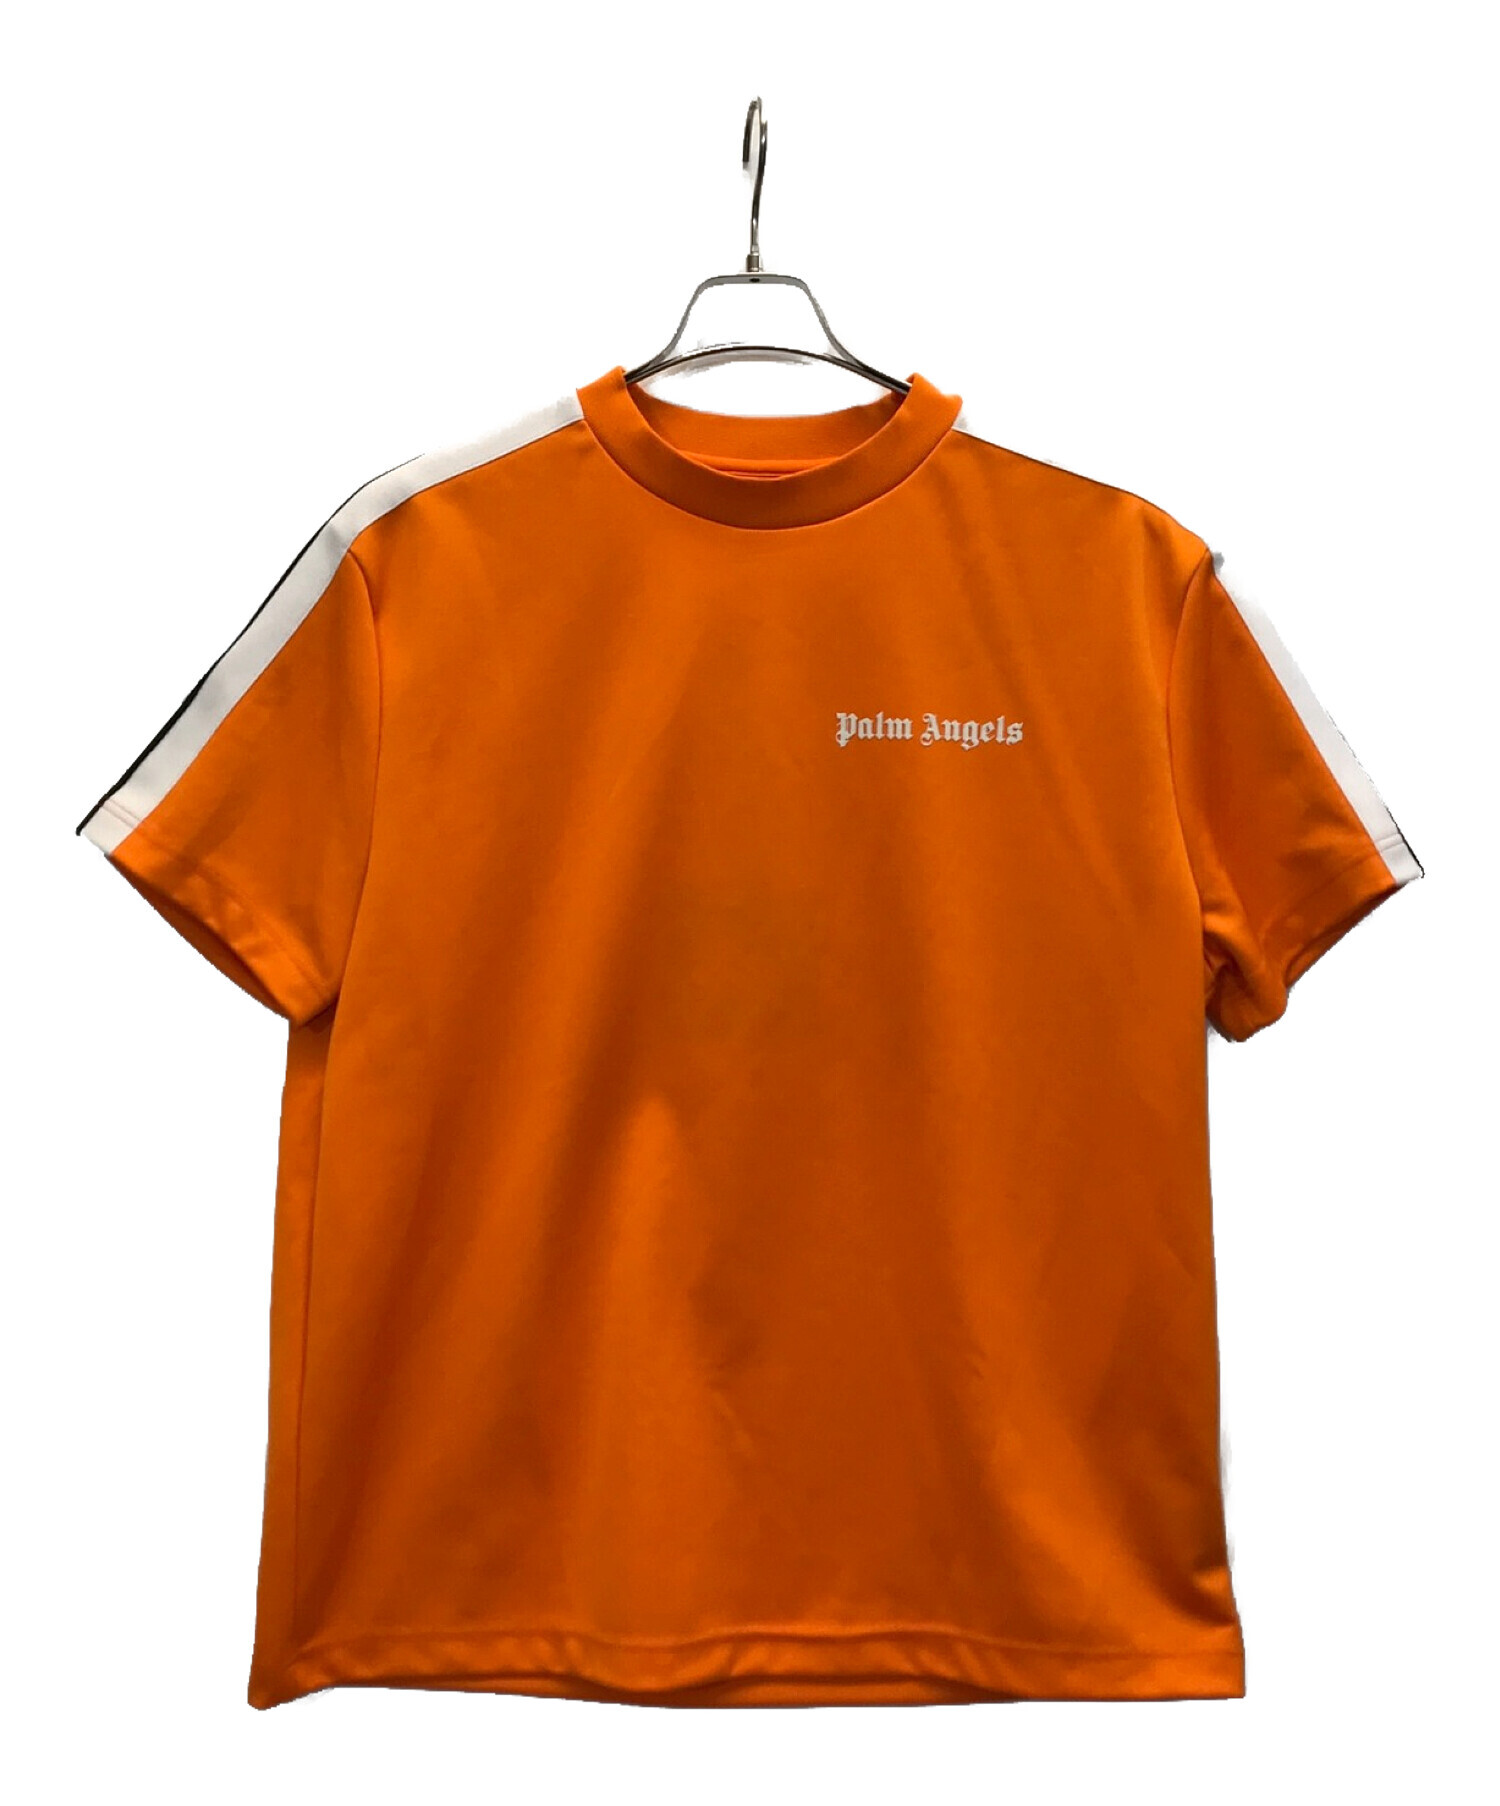 Palm パームエンジェルス Tシャツ Sサイズ - トップス